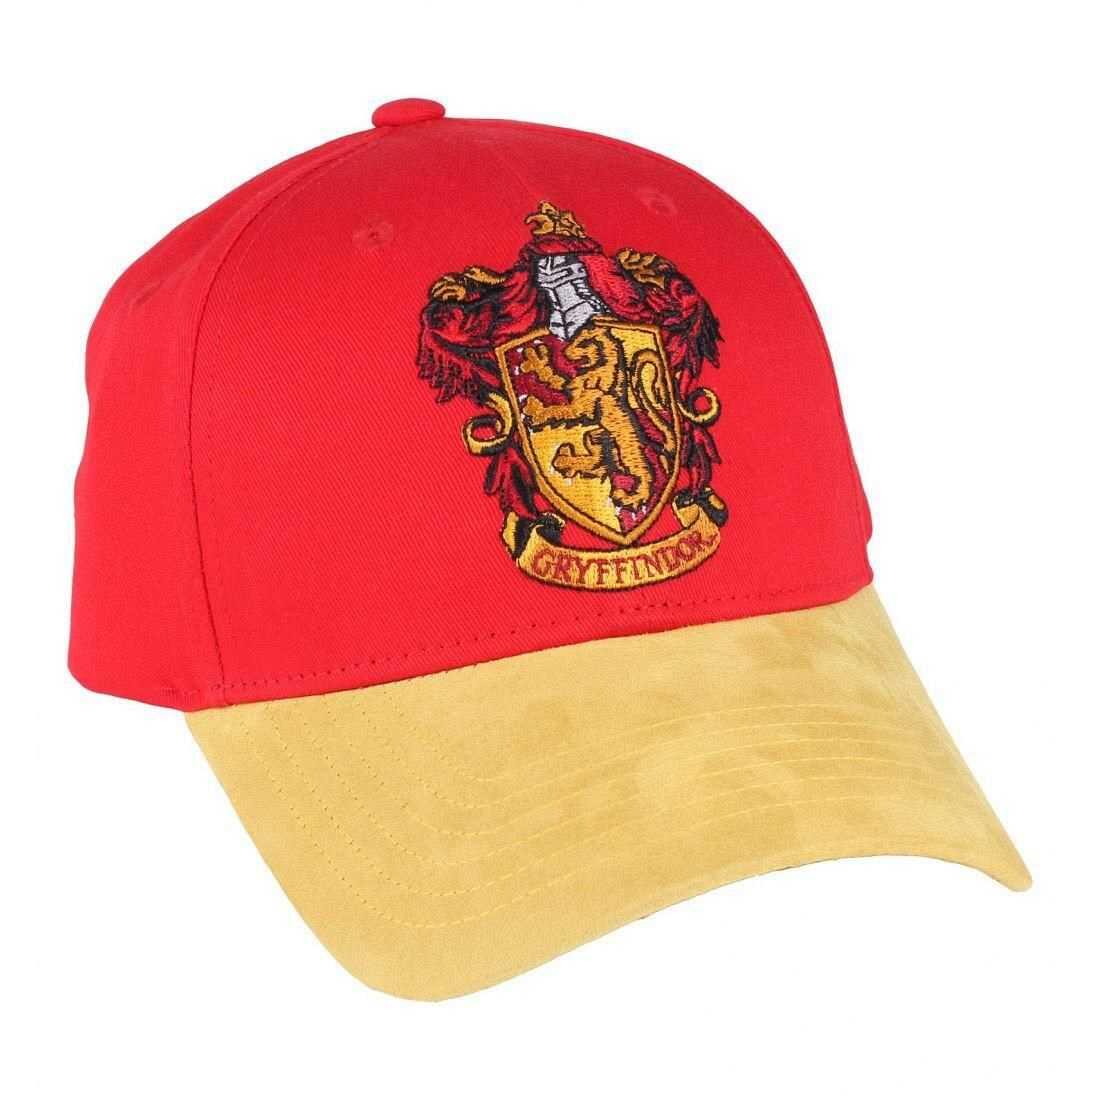 Harry Potter Gryffindor adjustable cap